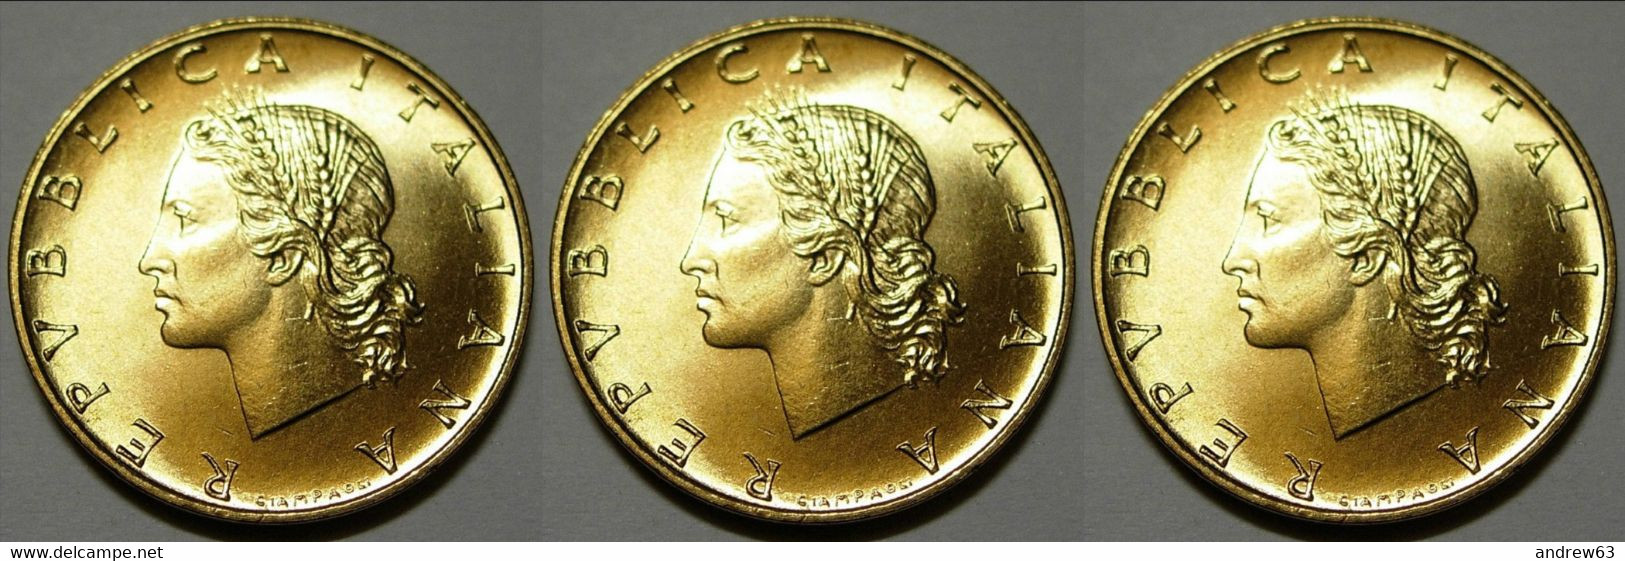 ITALIA - Lire 20 1993 - FDC/Unc Da Rotolino/from Roll 3 Monete/3 Coins - 20 Lire